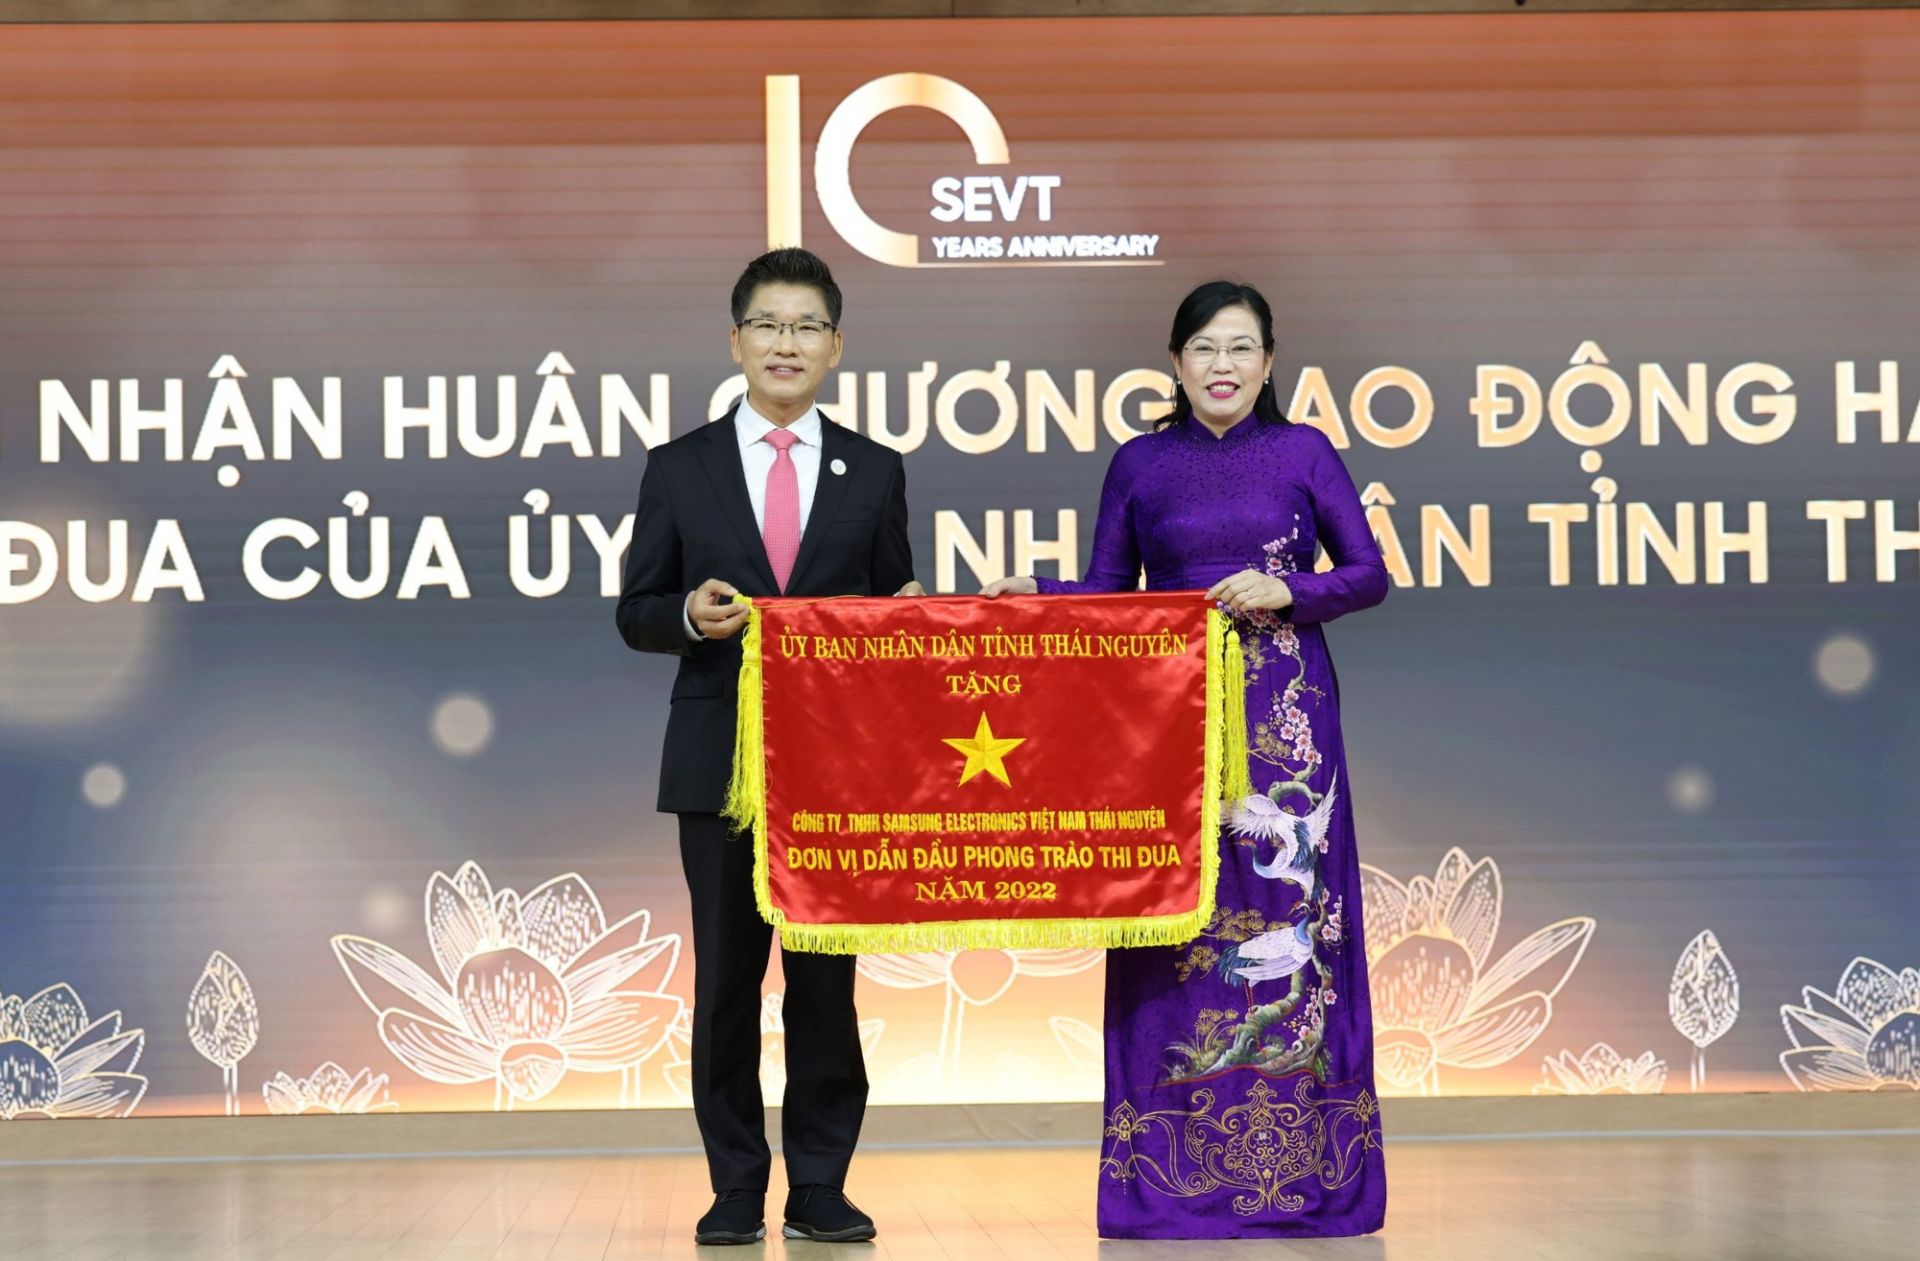 Bí thư Tỉnh ủy Thái Nguyên Nguyễn Thanh Hải trao Cờ Thi đua cho Công ty Samsung Việt Nam Thái Nguyên